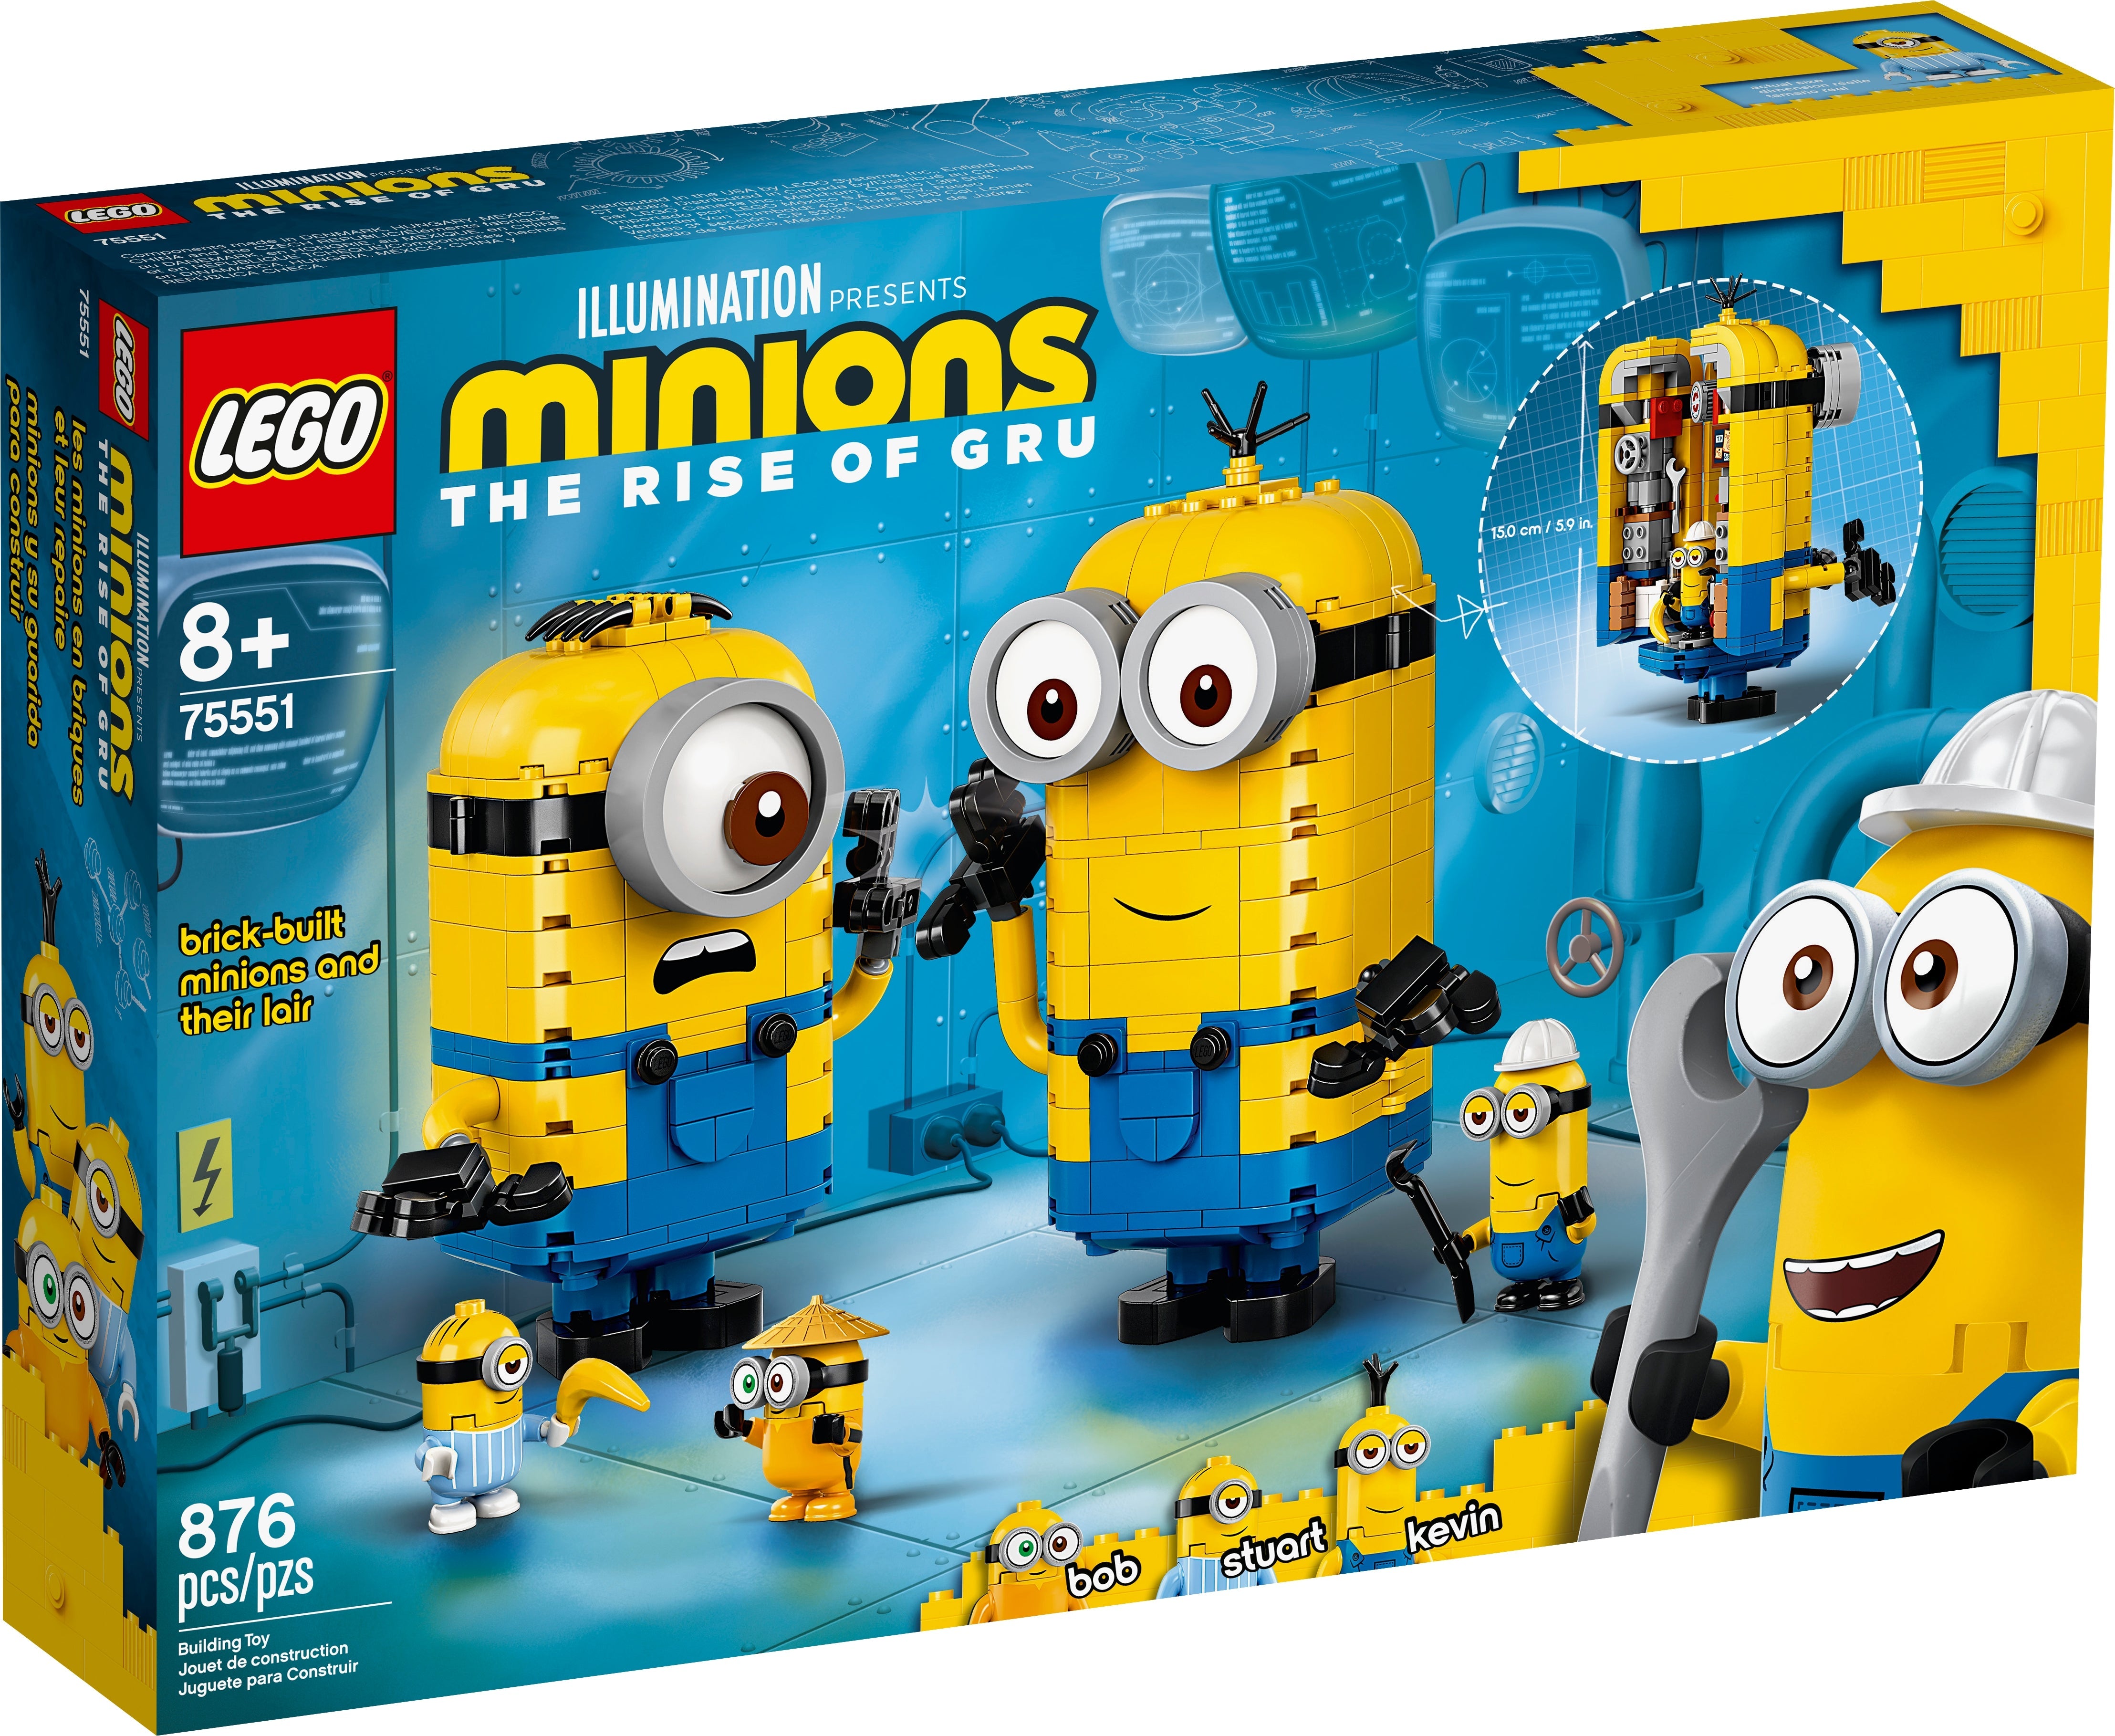 LEGO Minions Minions-Figuren Bauset mit Versteck (75551) - im GOLDSTIEN.SHOP verfügbar mit Gratisversand ab Schweizer Lager! (5702016619218)